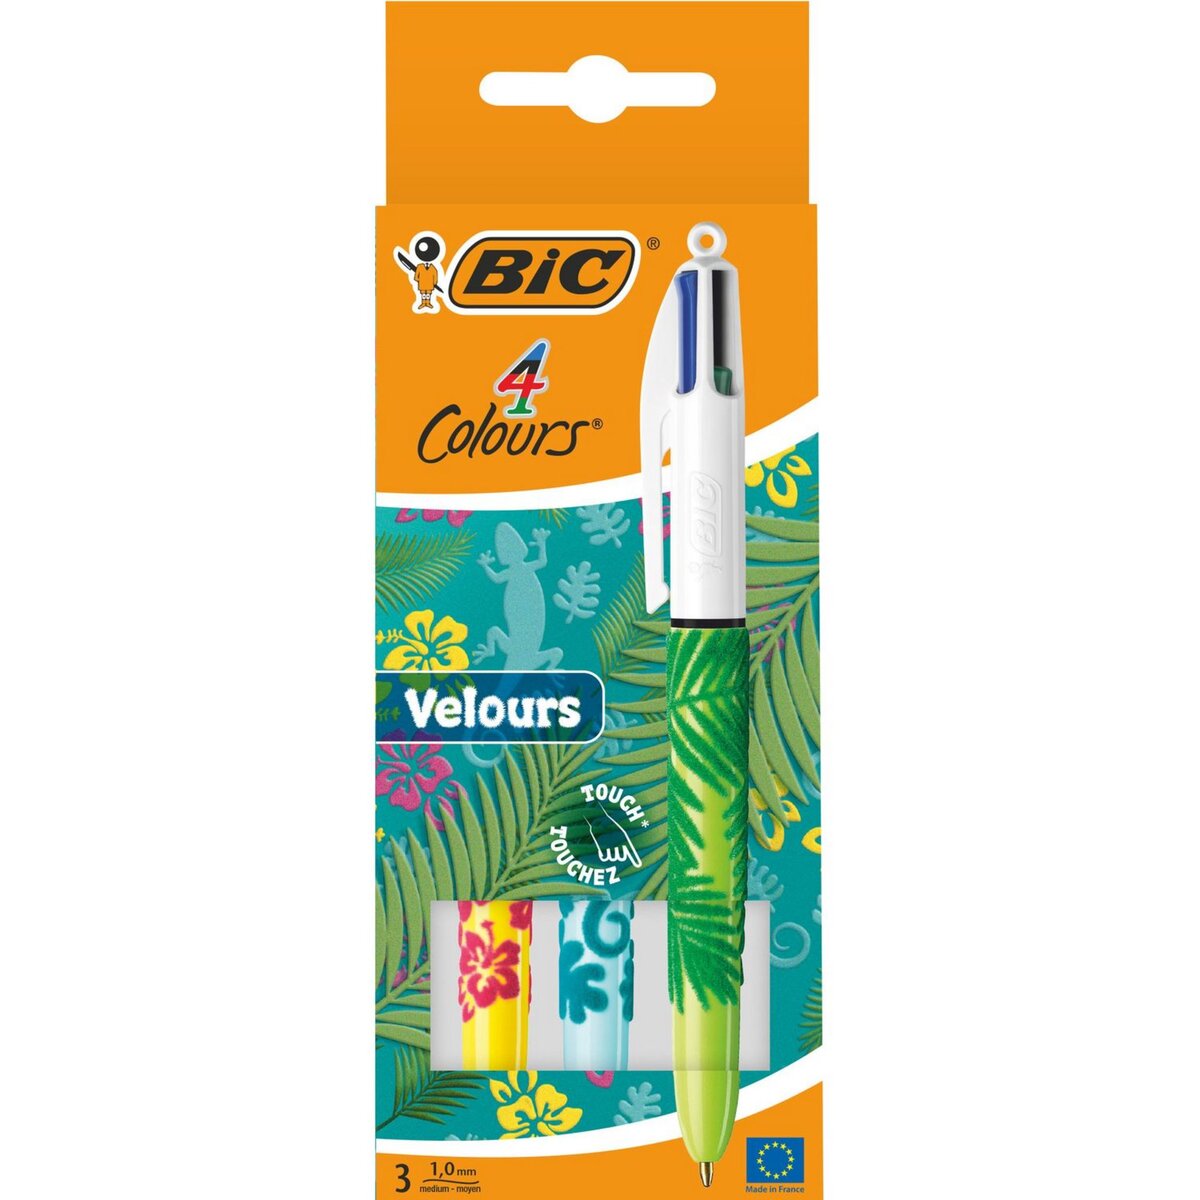 BIC Lot de 3 stylos bille 4 couleurs rétractable pointe moyenne Velours 1jaune/1bleu/1vert à motifs